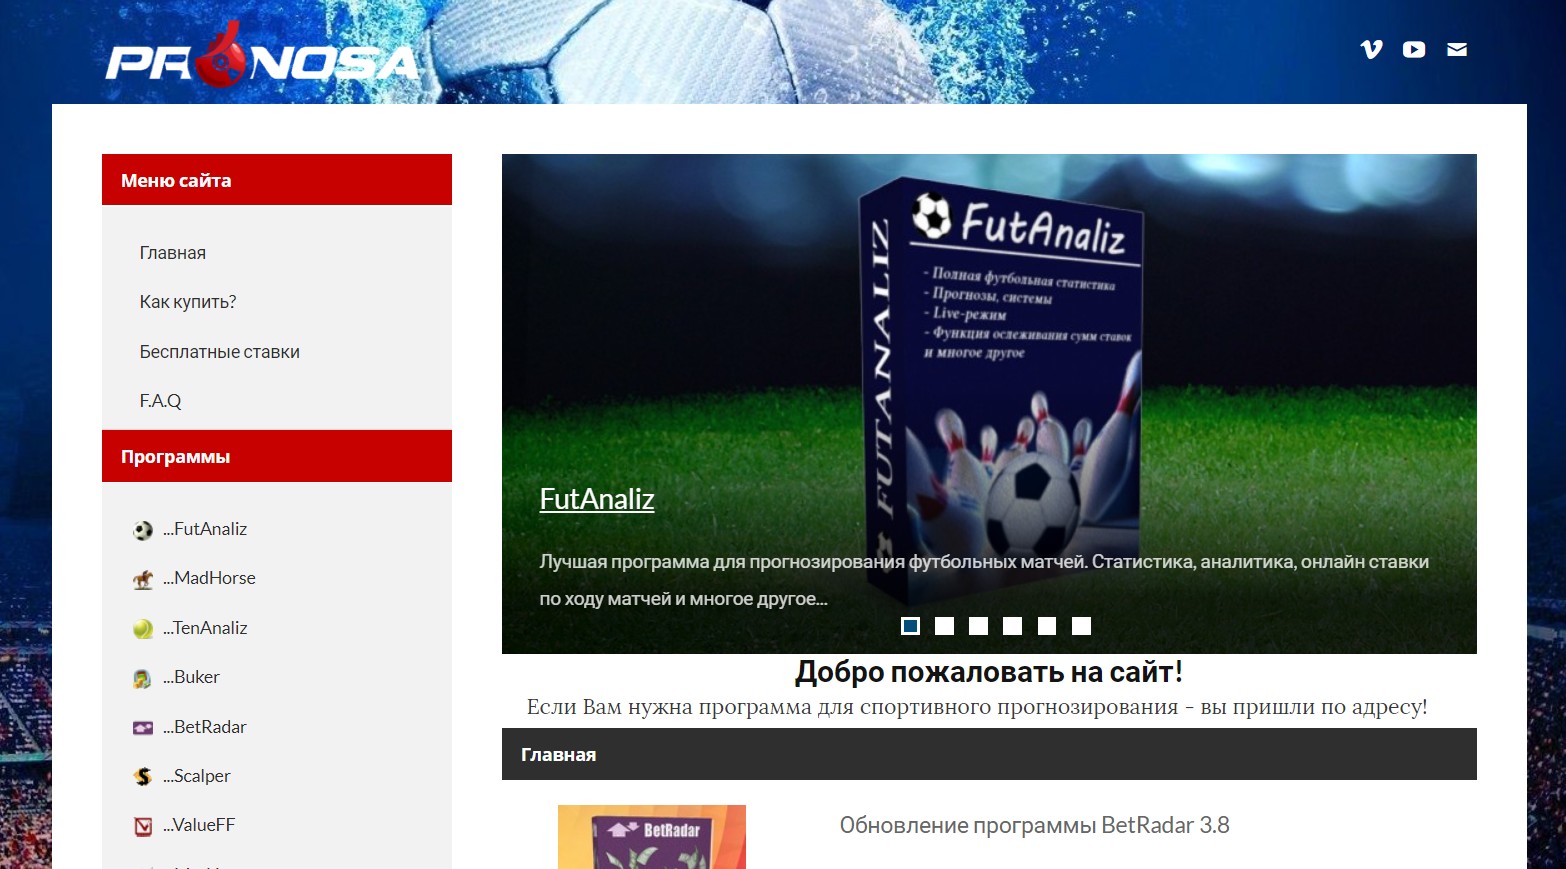 Официальный сайт Pronosa ru с программами для ставок